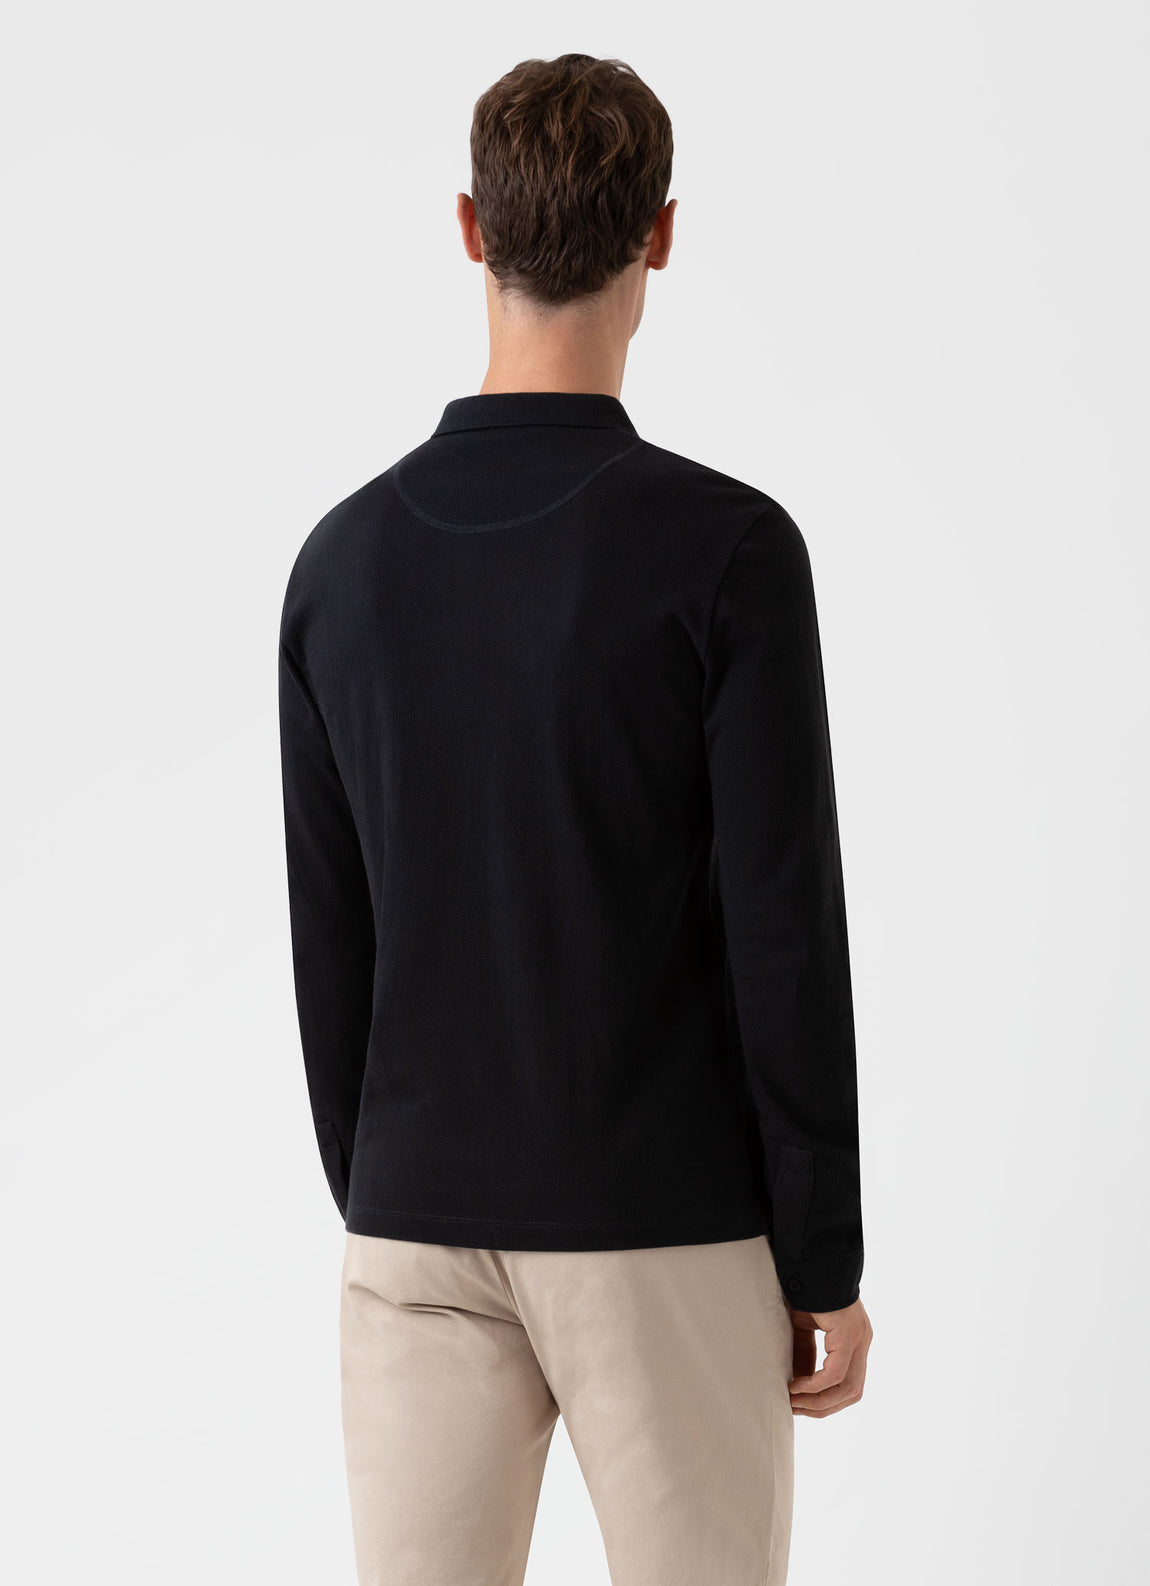 Men's Long Sleeve Riviera Polo Shirt in Black | Sunspel